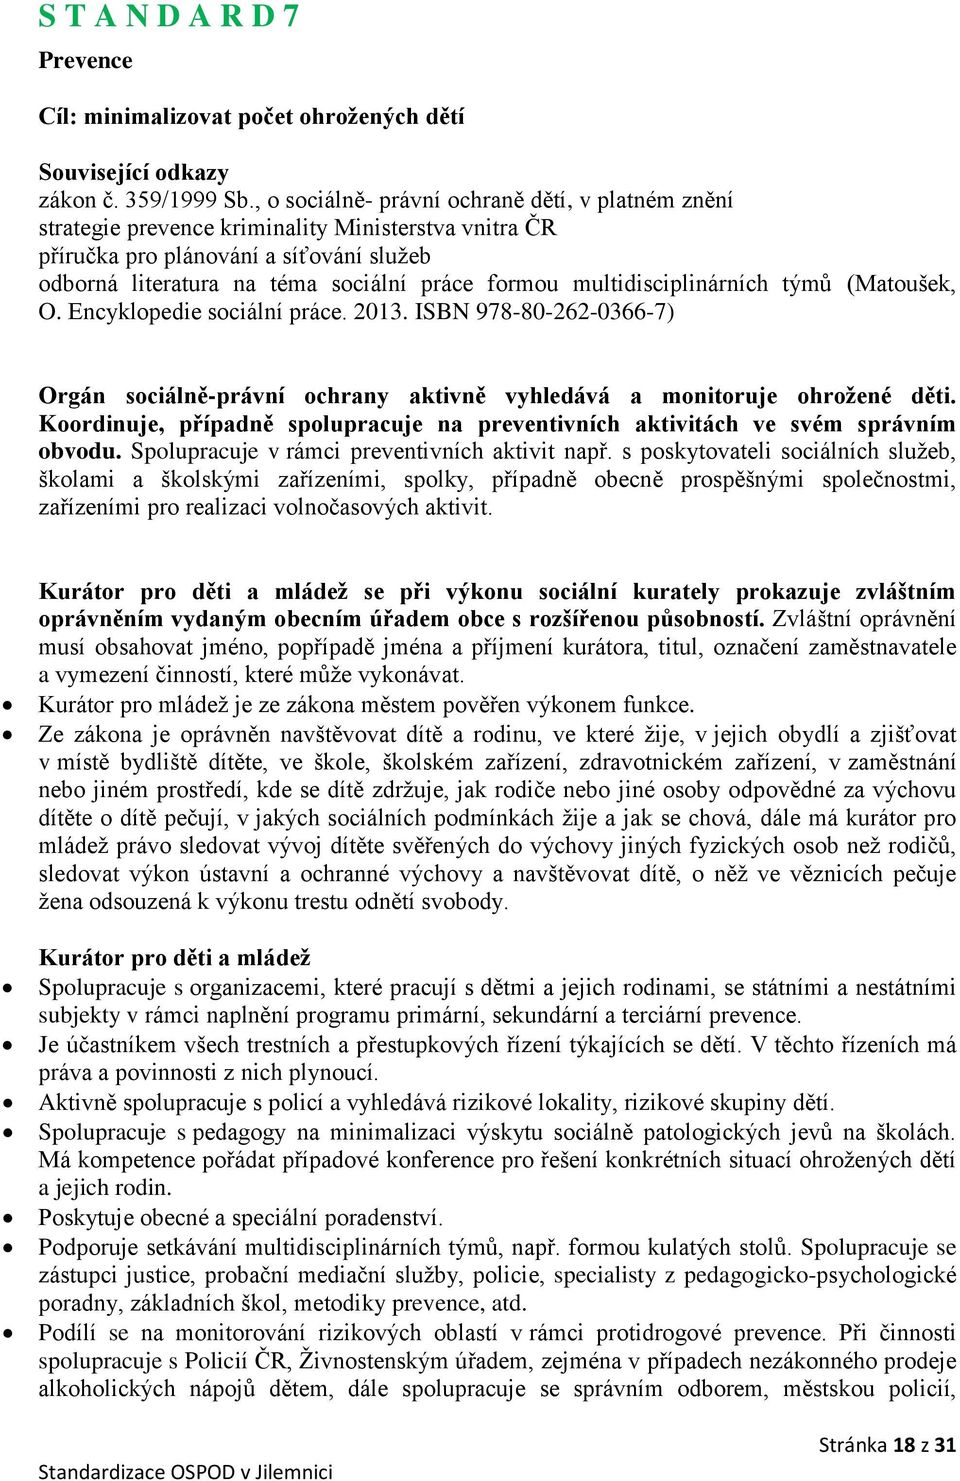 multidisciplinárních týmů (Matoušek, O. Encyklopedie sociální práce. 2013. ISBN 978-80-262-0366-7) Orgán sociálně-právní ochrany aktivně vyhledává a monitoruje ohrožené děti.